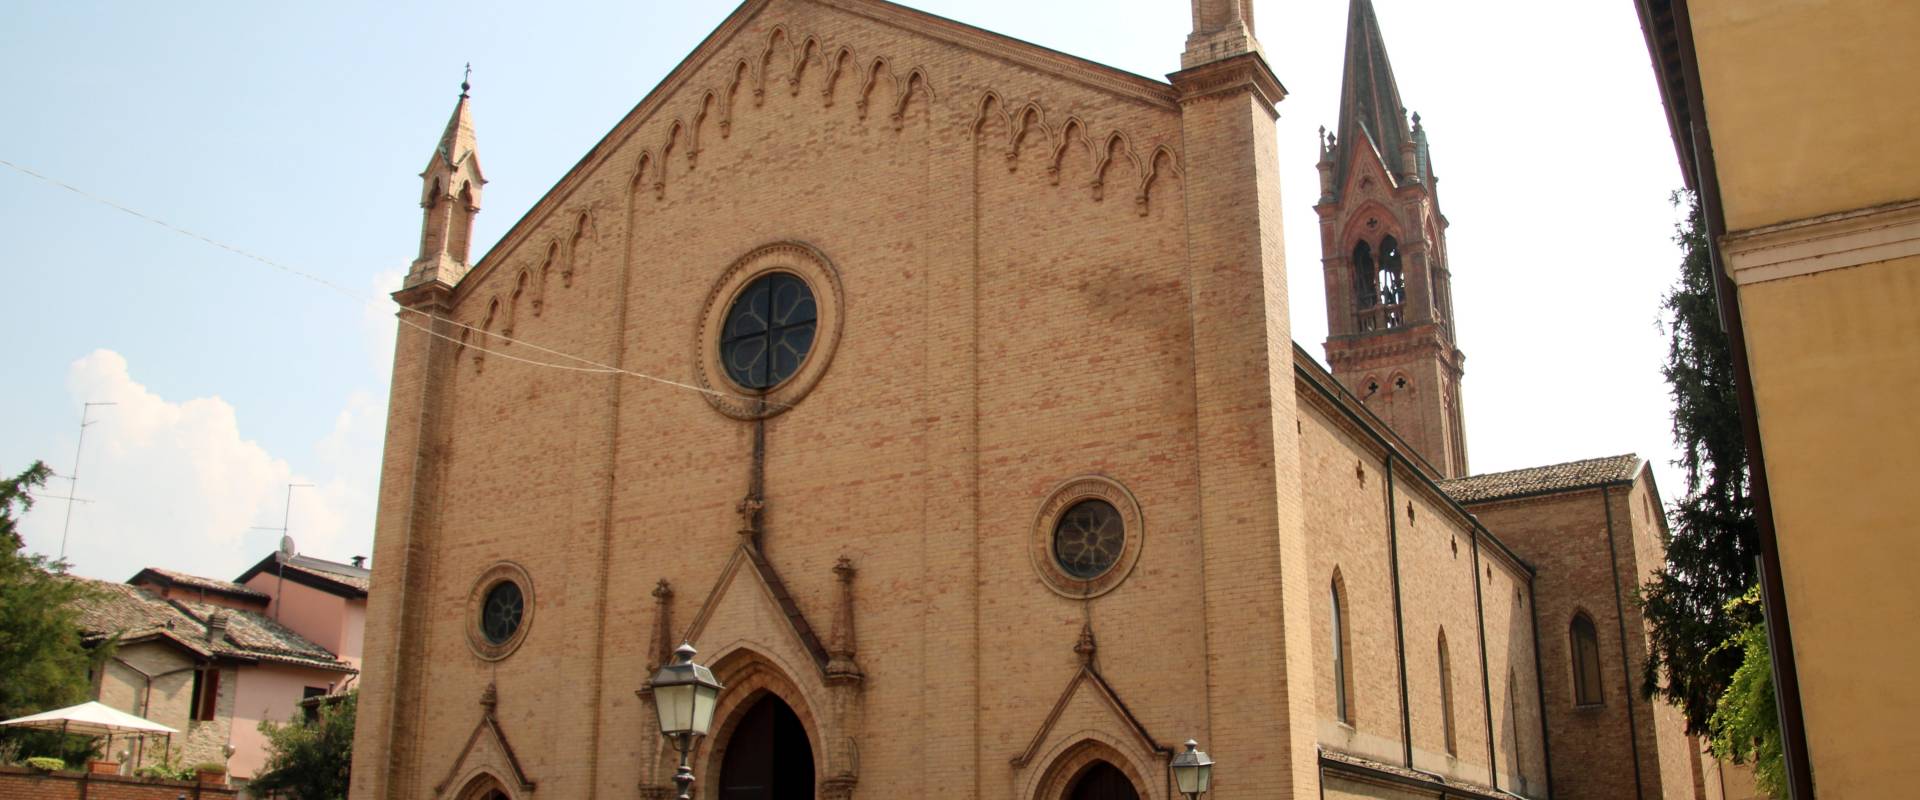 Chiesa dei Santi Senesio e Teopompo (Castelvetro di Modena) 06 foto di Mongolo1984